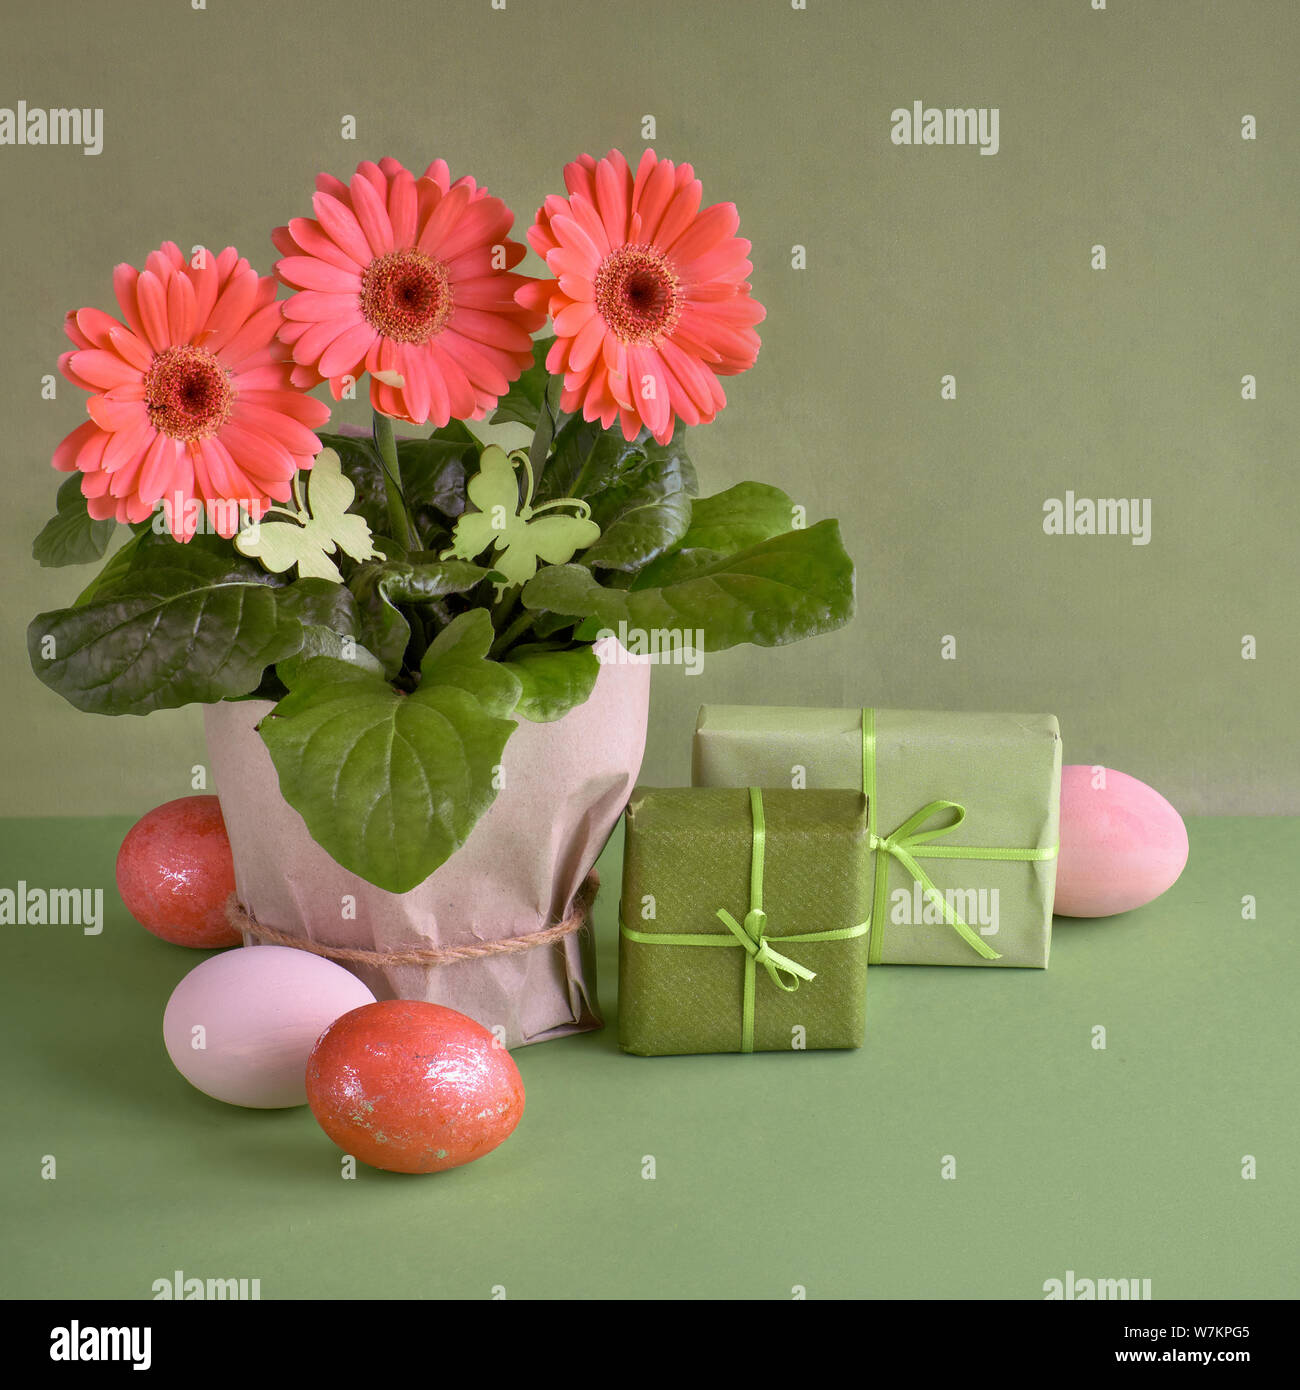 Gerbera fleurs corail daisy et les oeufs de Pâques sur fond de papier vert. Vente de printemps de l'image concept avec copie-espace, composition carrée Banque D'Images